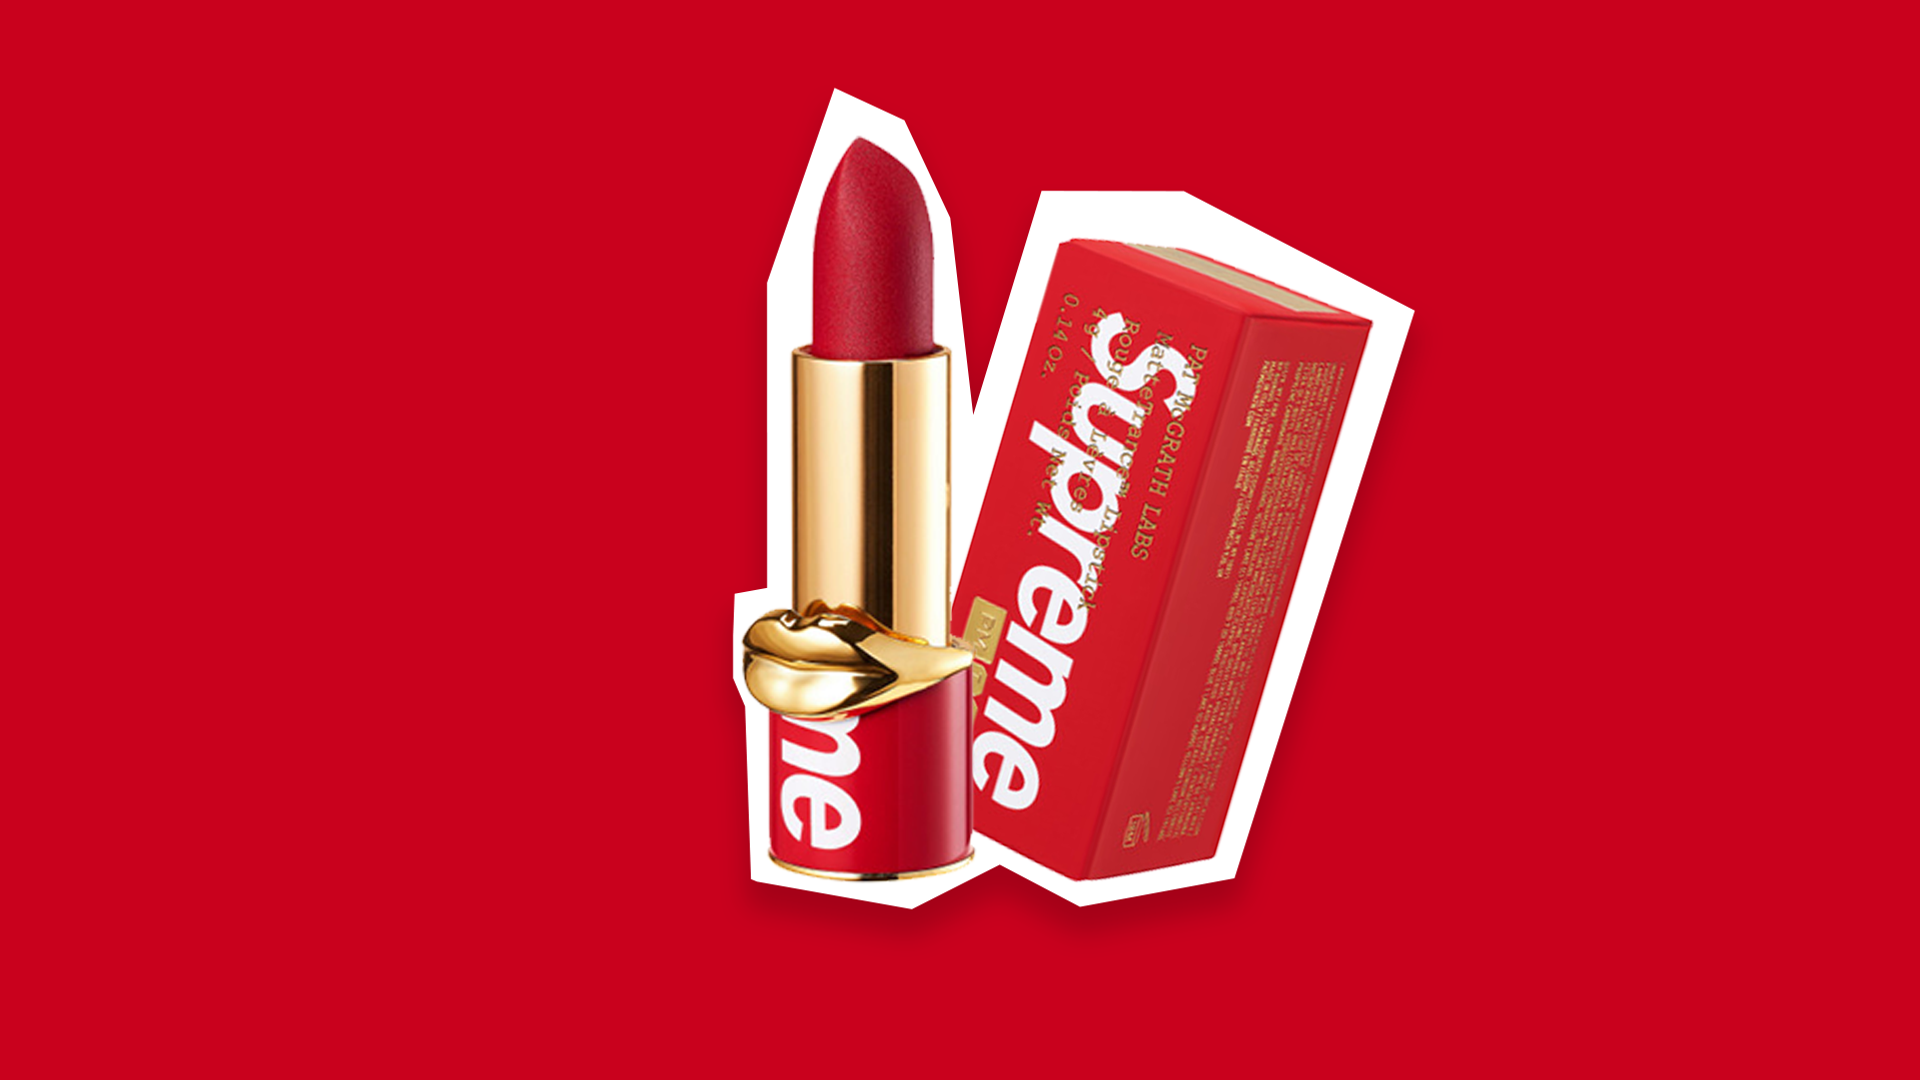 Supreme Drops A New Lipstick With Pat McGrath | Dieline - Design